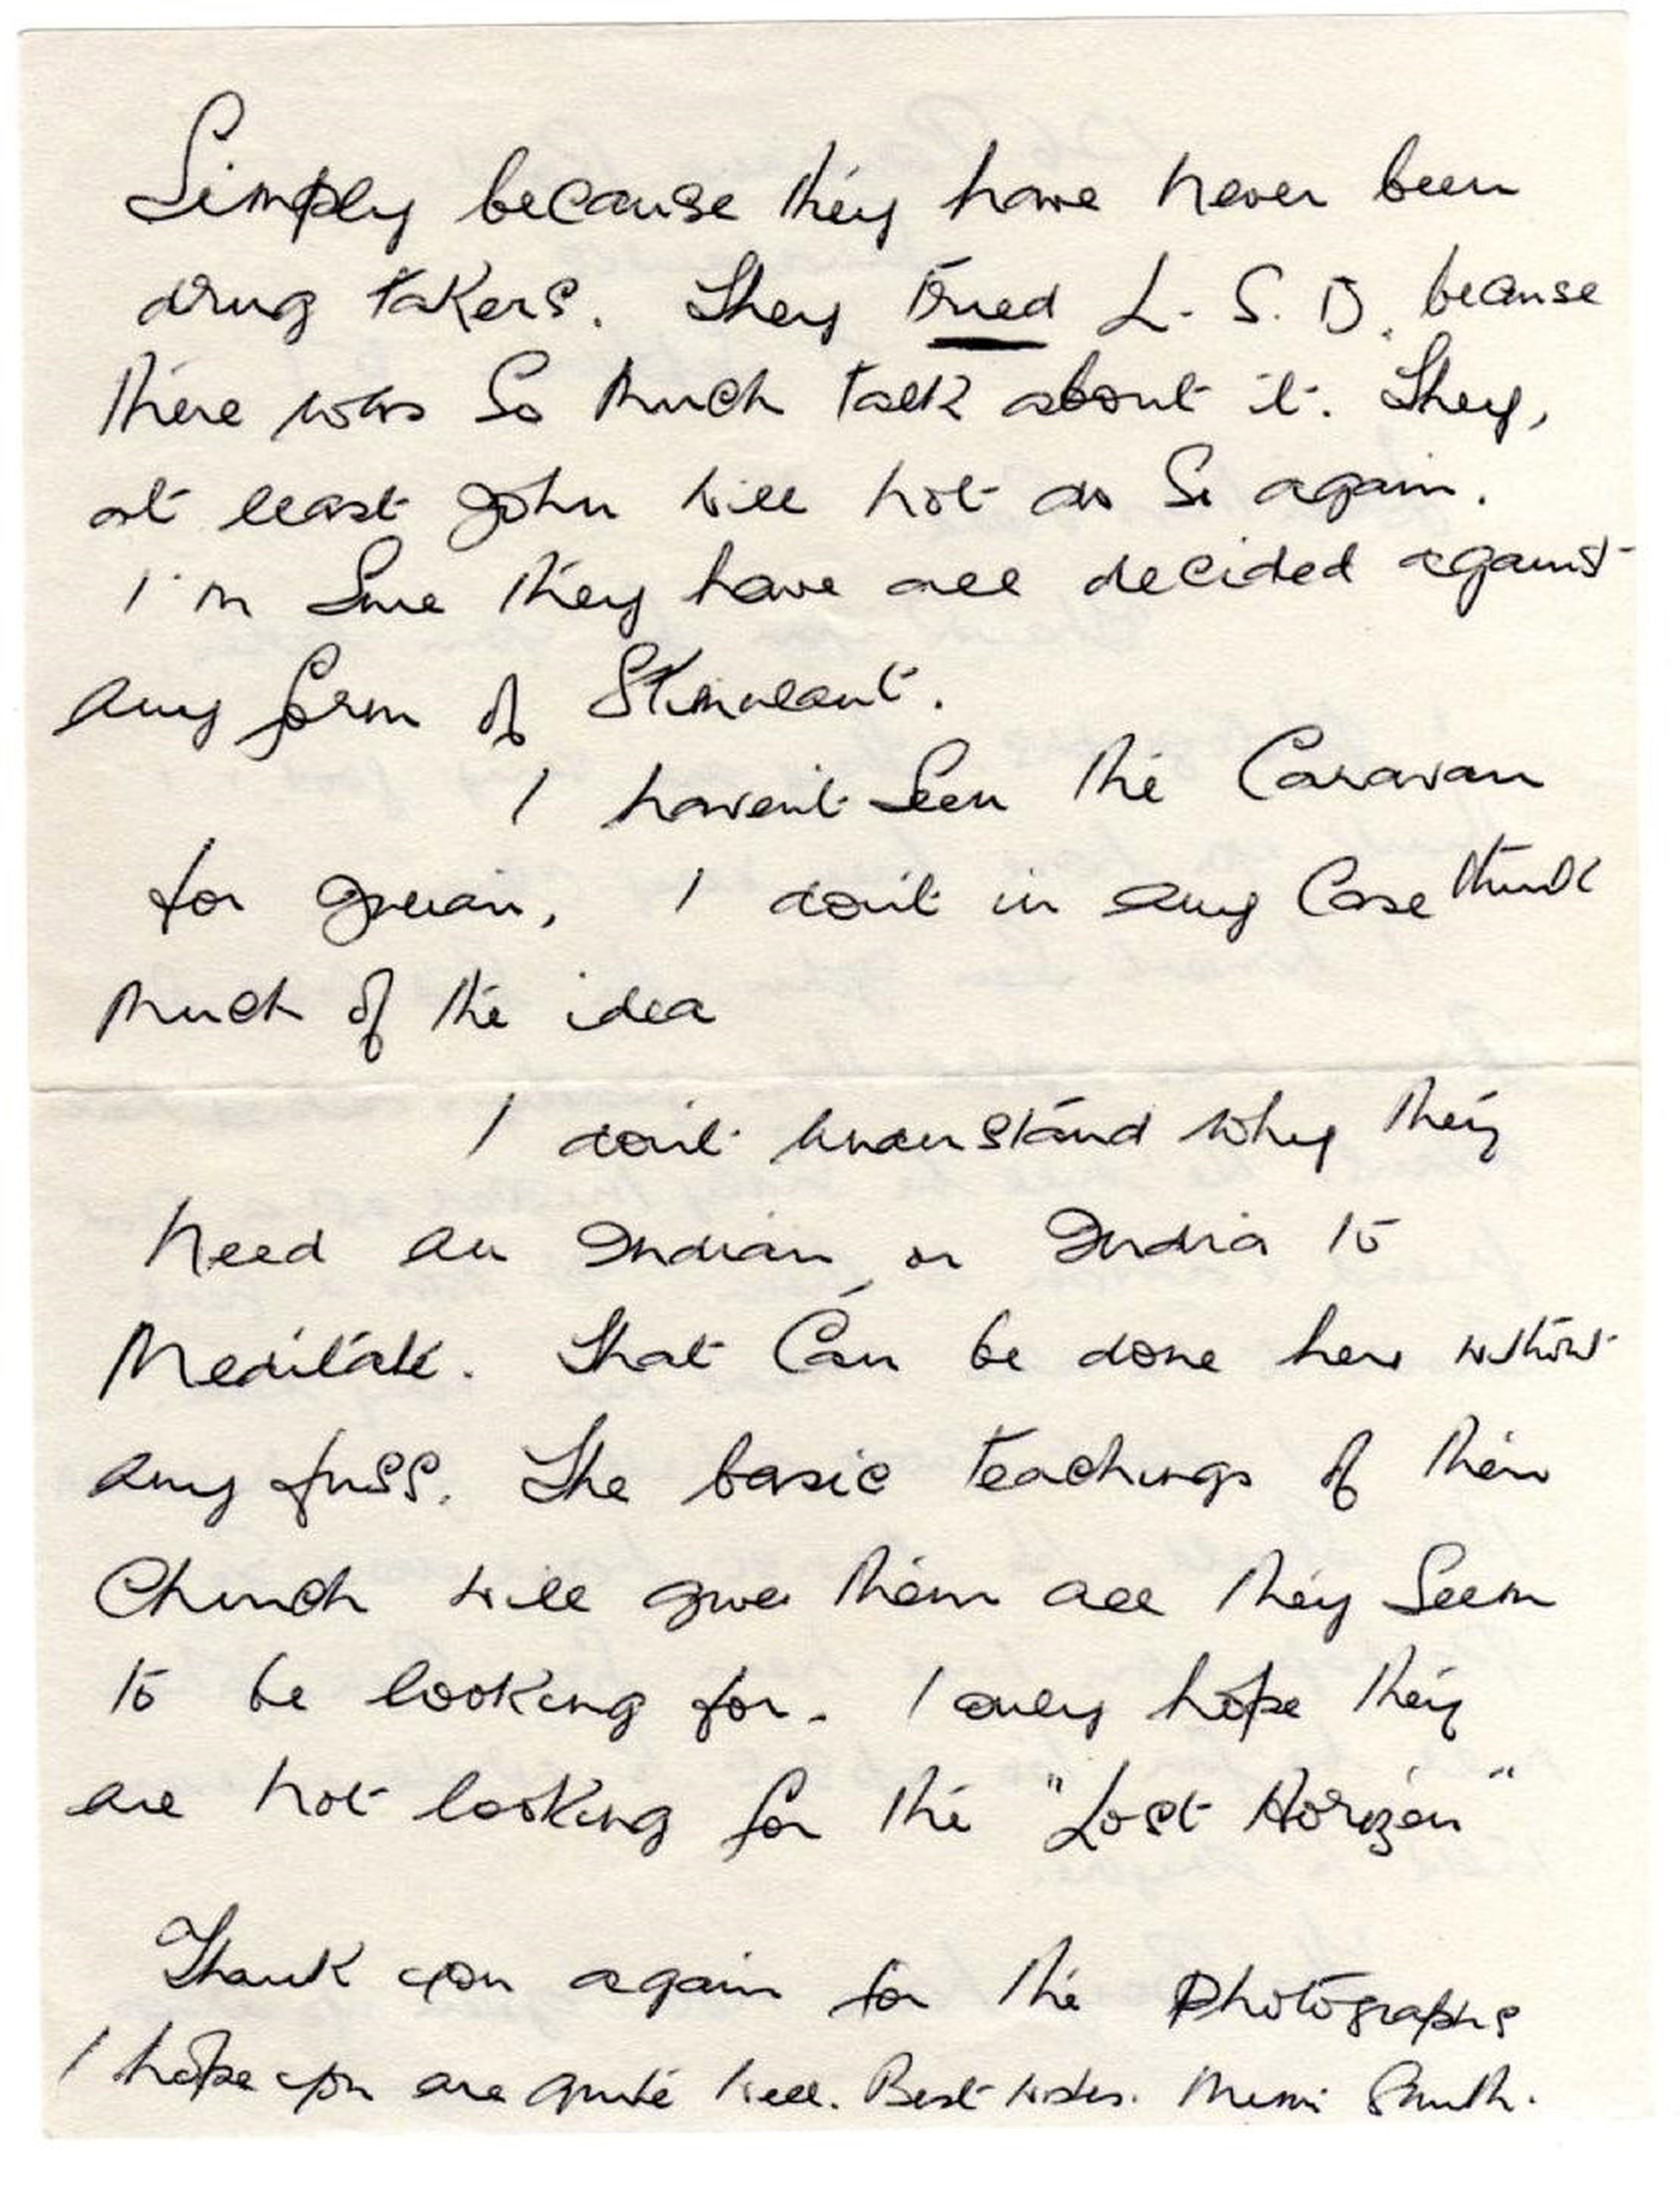 Beatles auction letter